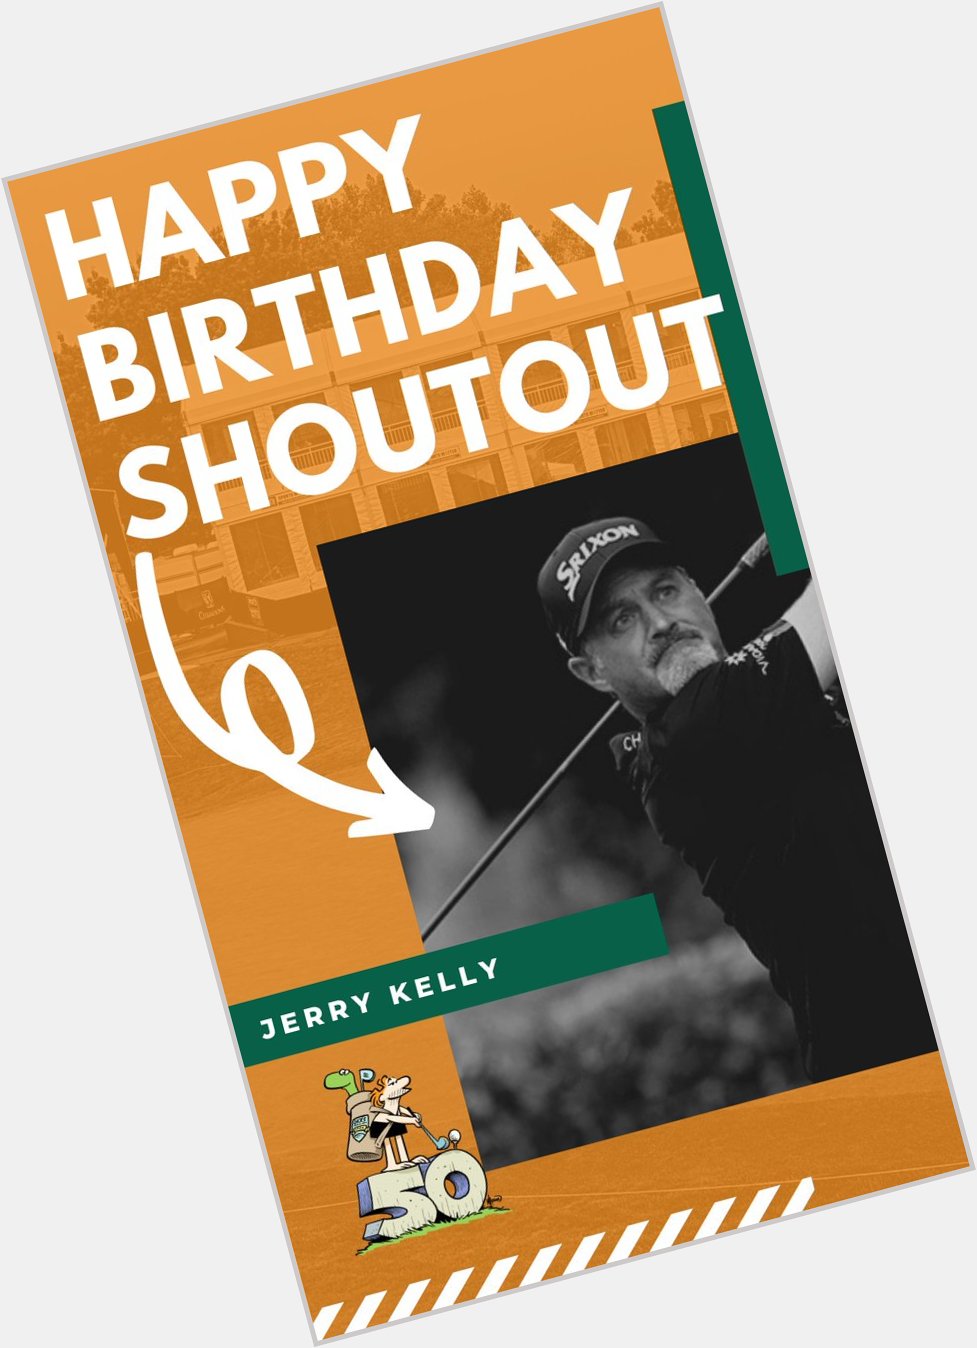 Happy Birthday to Jerry Kelly 